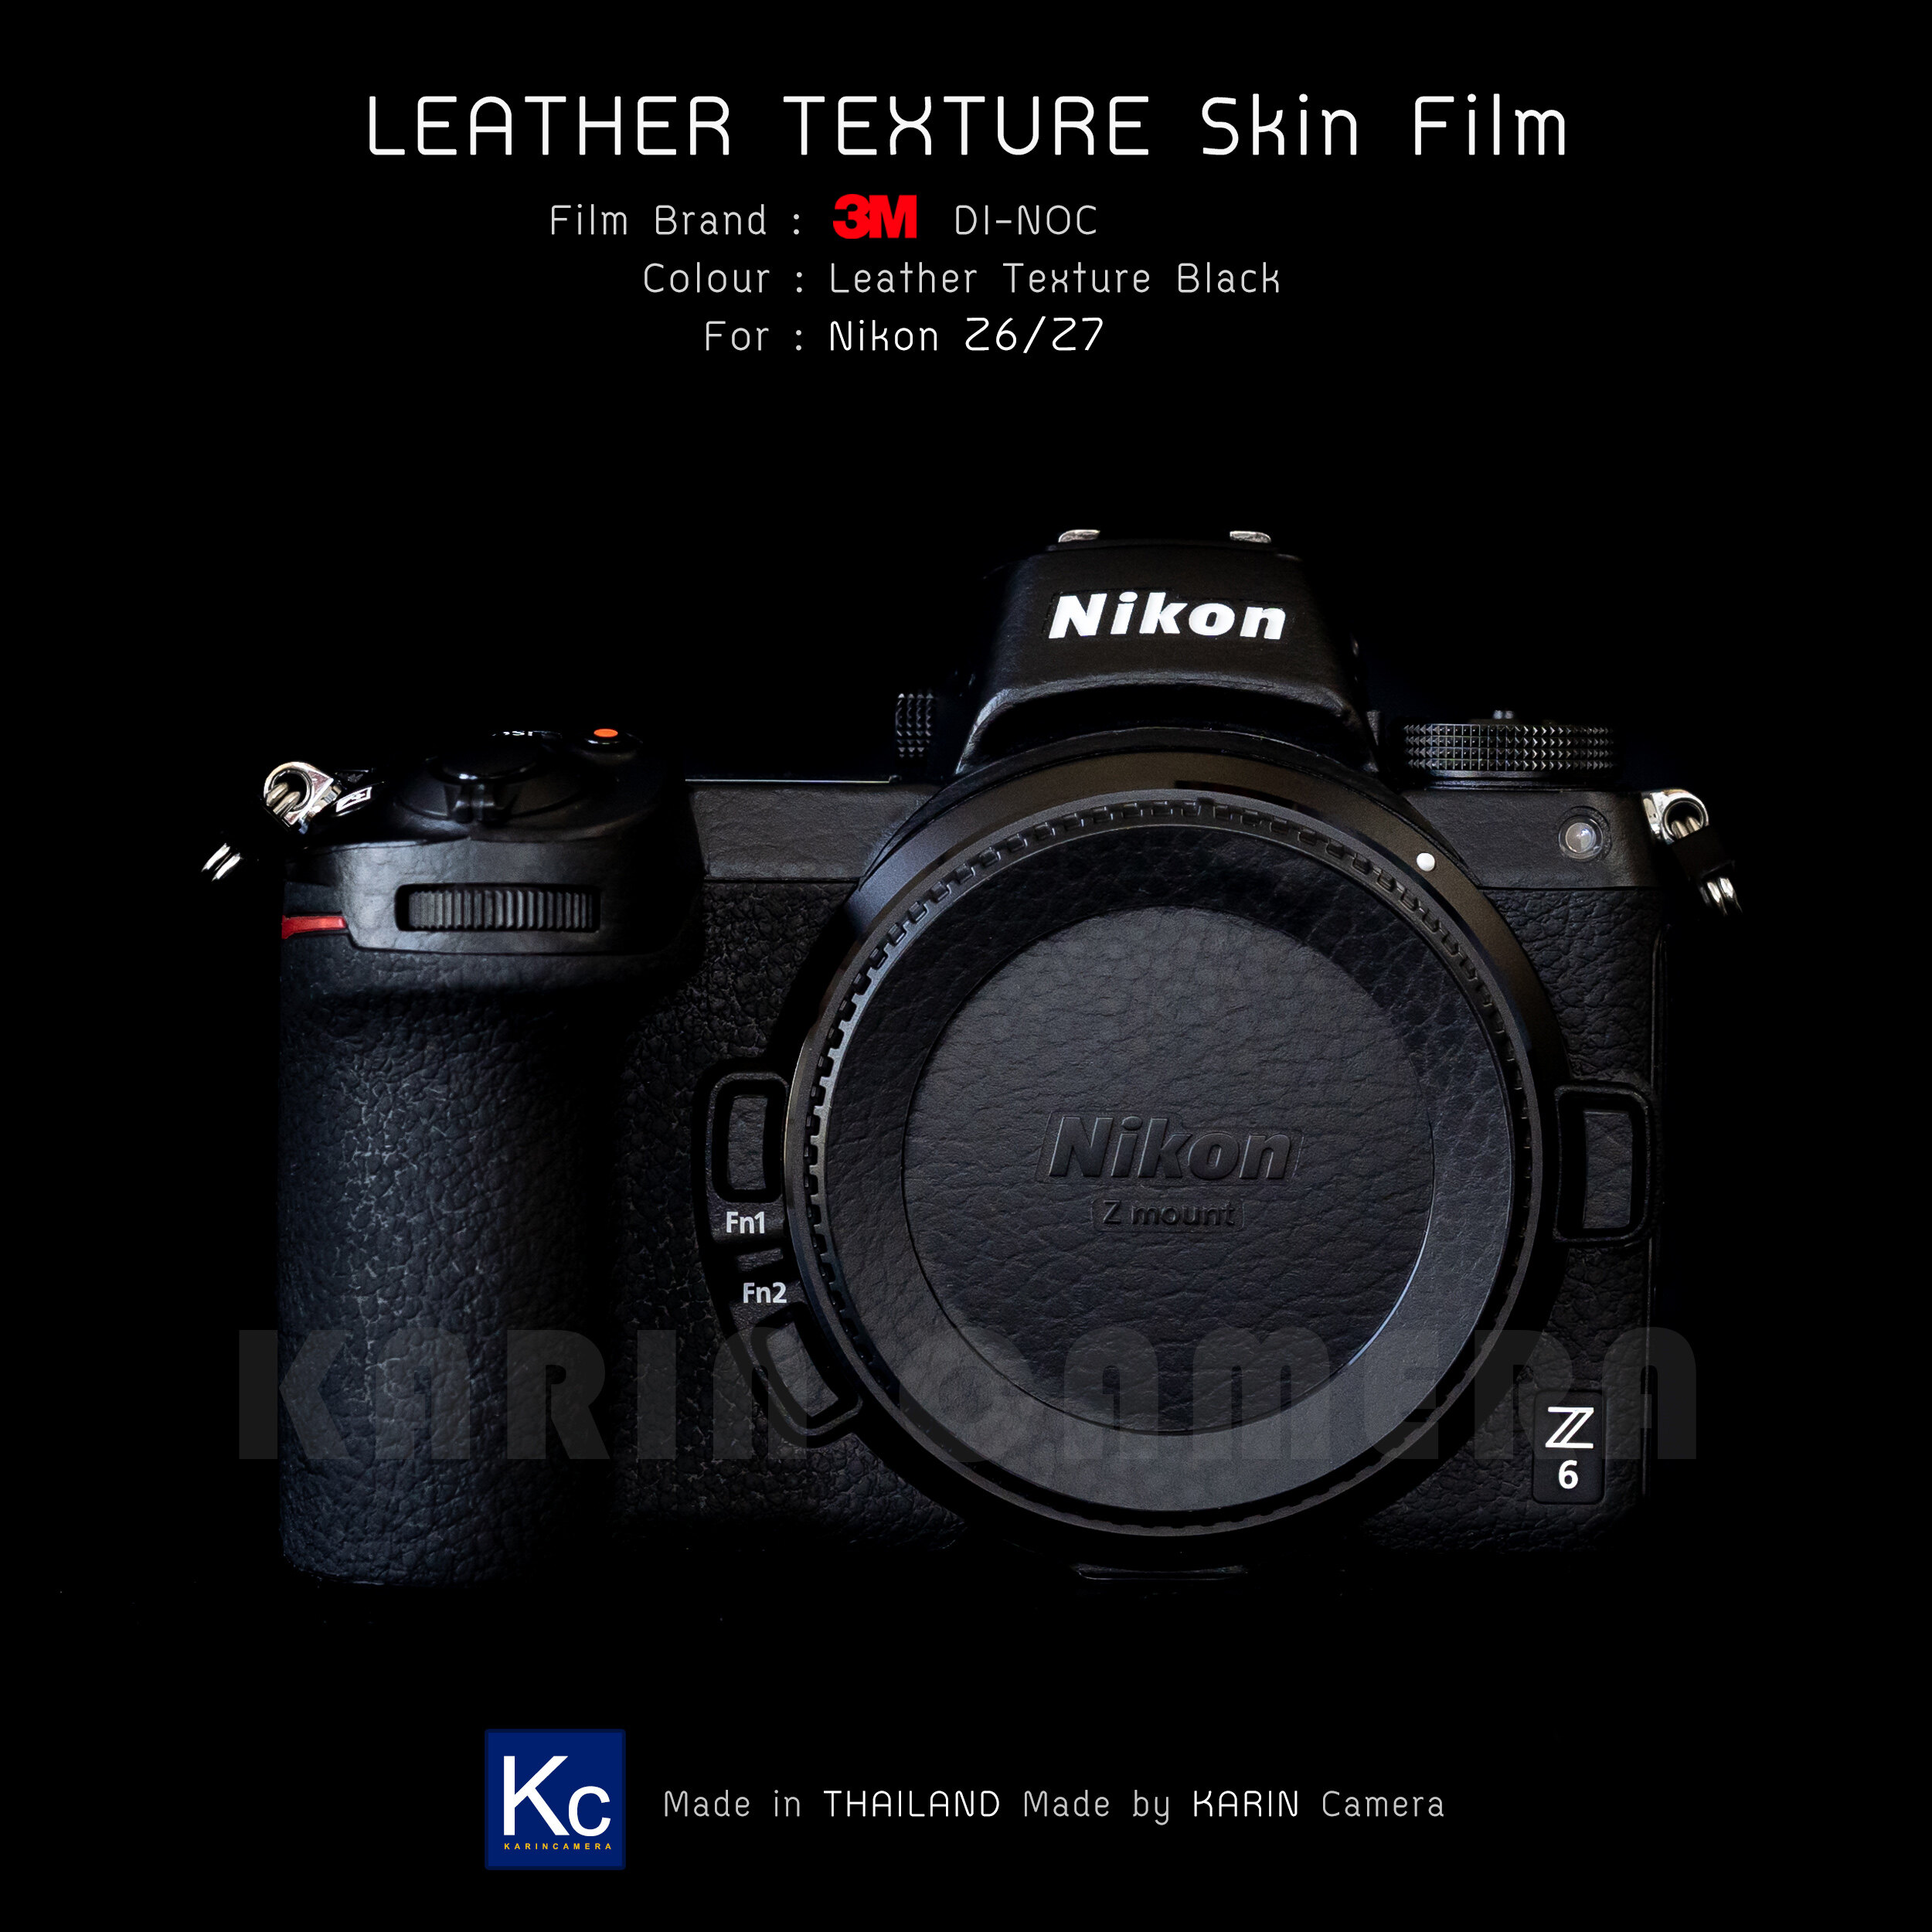 สติ๊กเกอร์ ฟิล์มกันรอย กล้อง Nikon Z6/Z7  ฟิล์ม 3M แท้ 100%  3M series1080 , 3M series2080 , 3M Di-NOC   (Protector film for Nikon Z6/Z7) สี สีเขียวขุ่น สี สีเขียวขุ่น